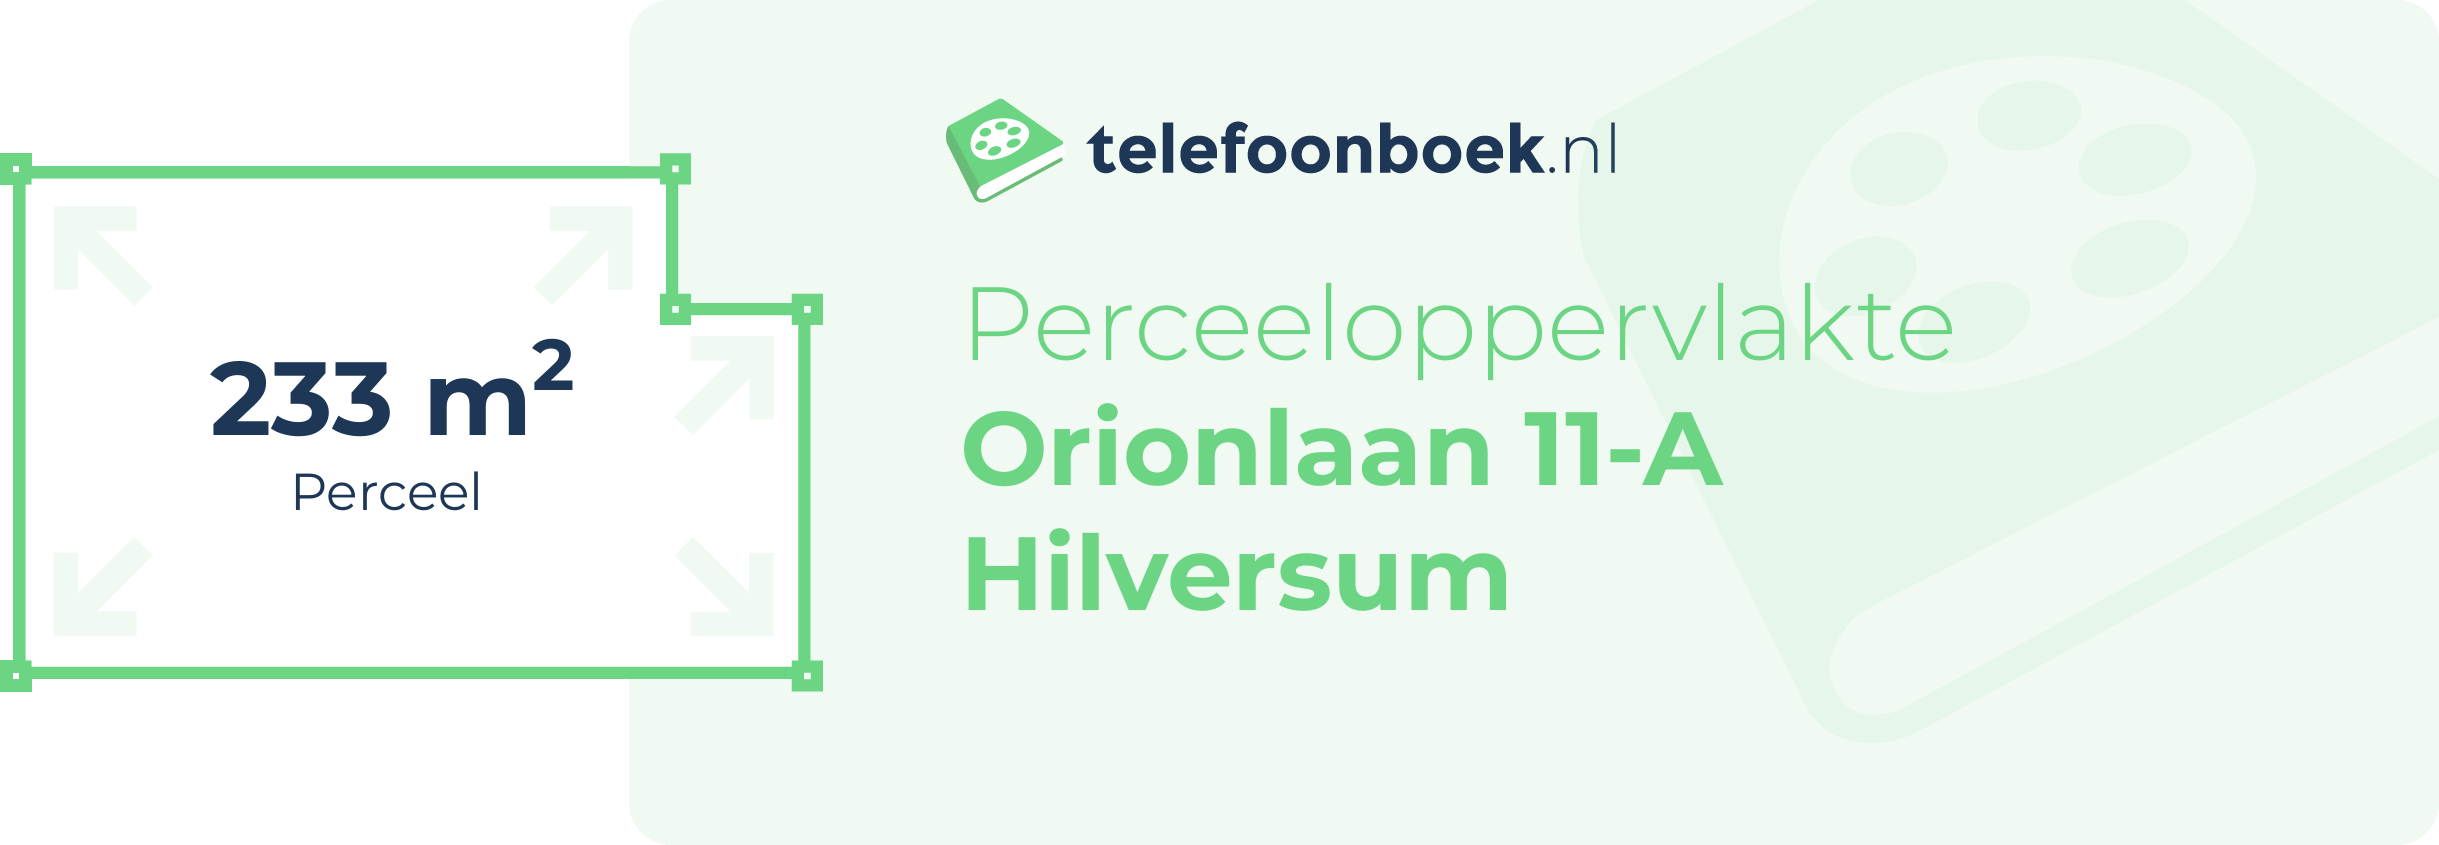 Perceeloppervlakte Orionlaan 11-A Hilversum